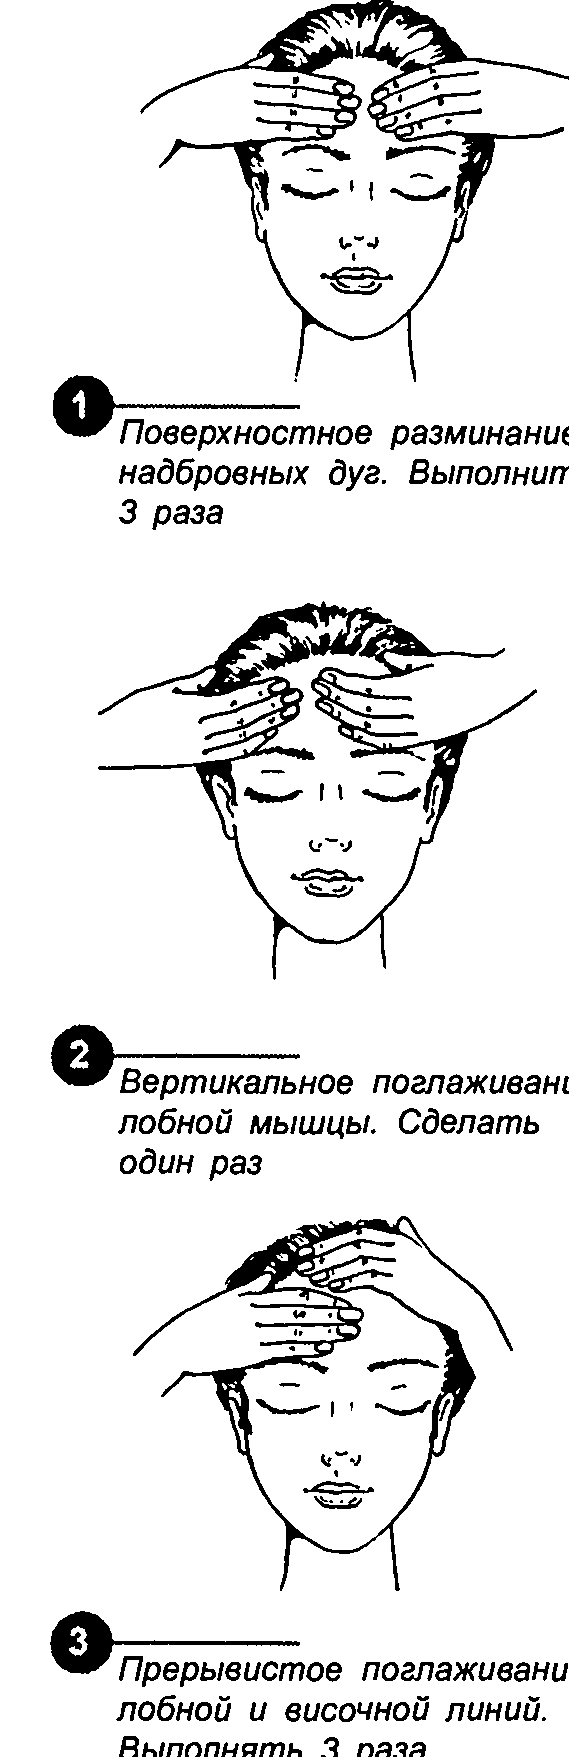 Виды и техники массажа головы - показания для релаксации, снятия болей и роста волос